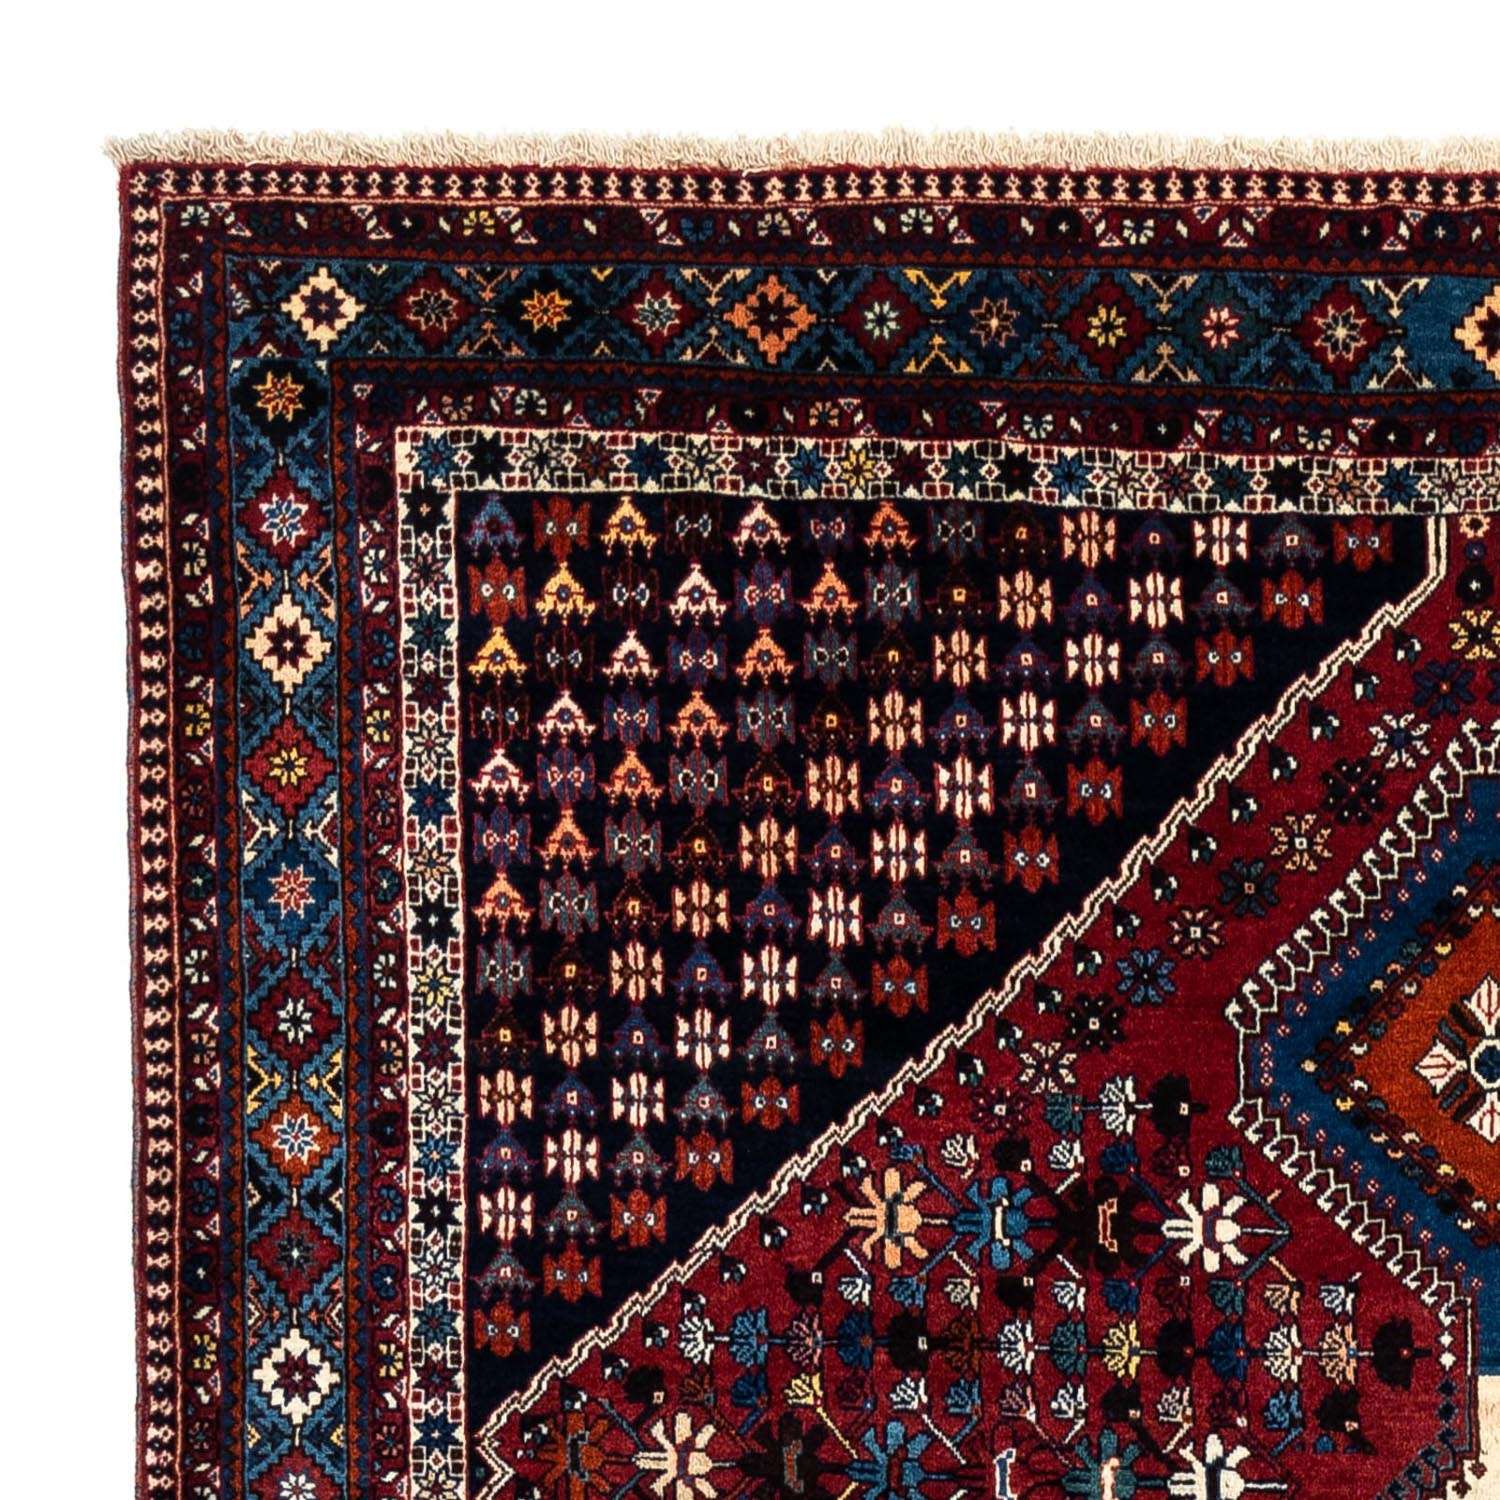 Alfombra persa - Nómada - 320 x 205 cm - rojo oscuro